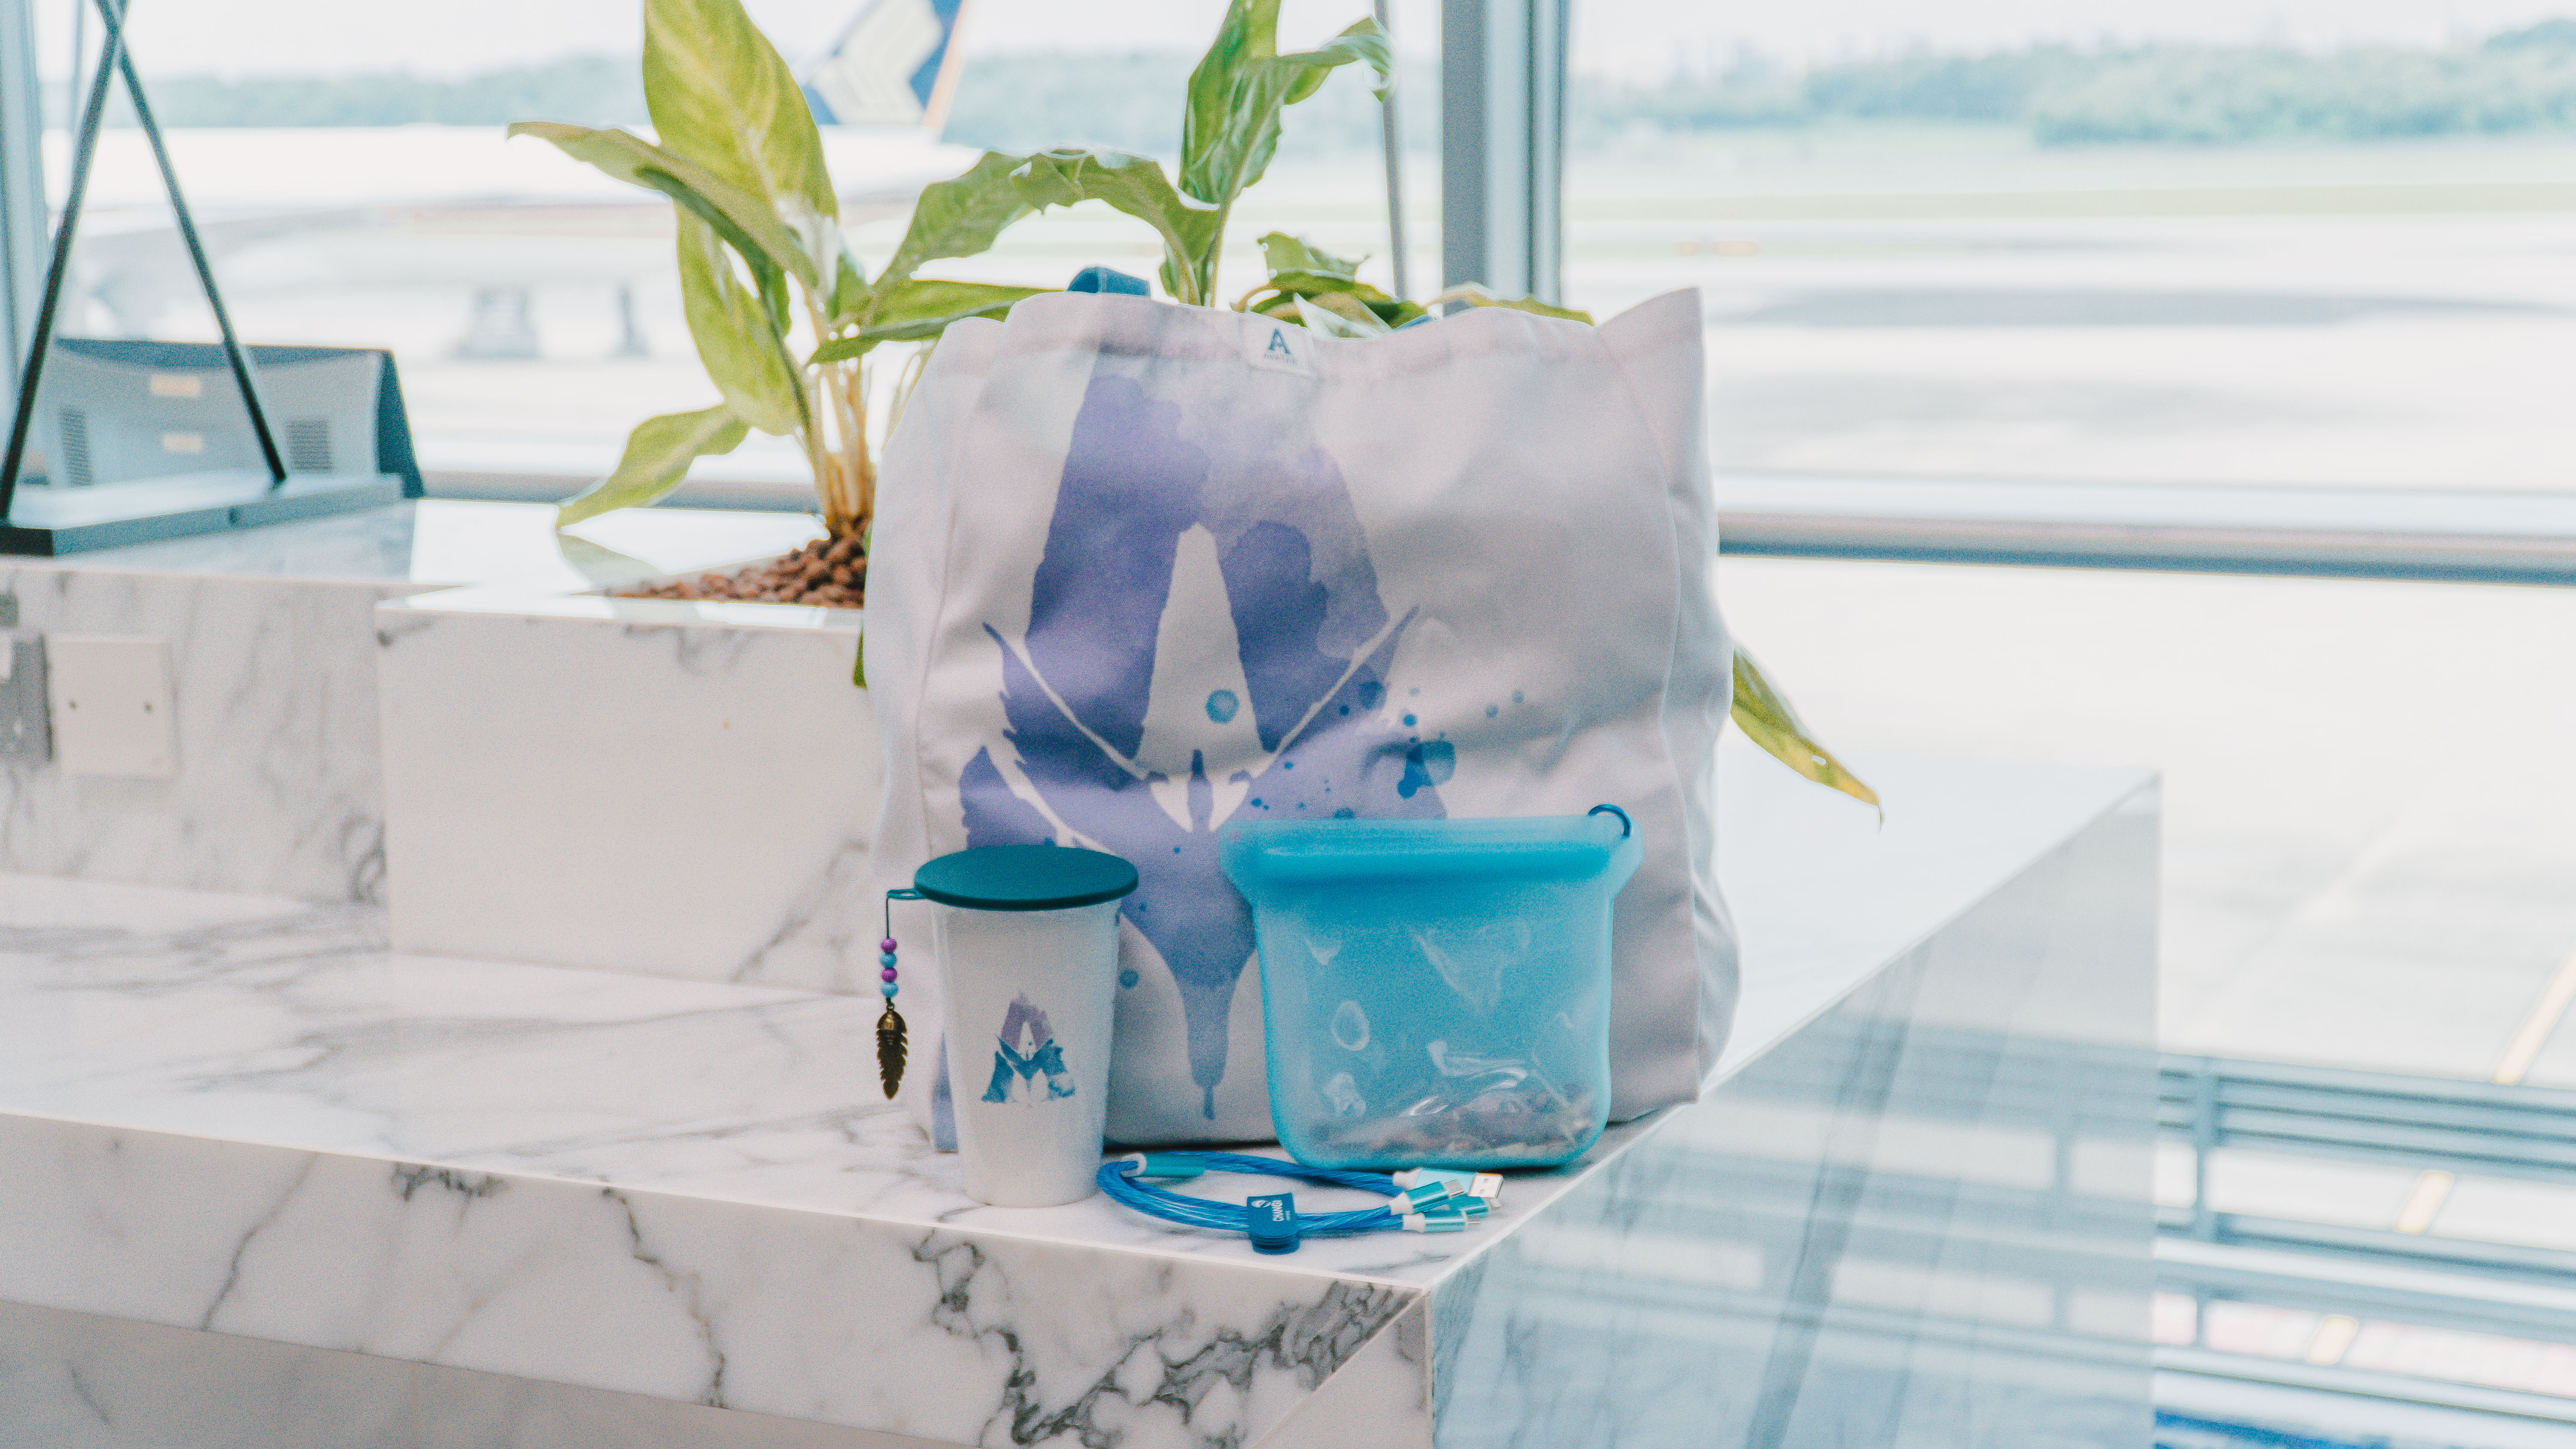 Dapatkan merchandise eksklusif dari Changi, Avatar: The Way of Water saat Anda berbelanja di Changi Airport dan Jewel Changi Airport